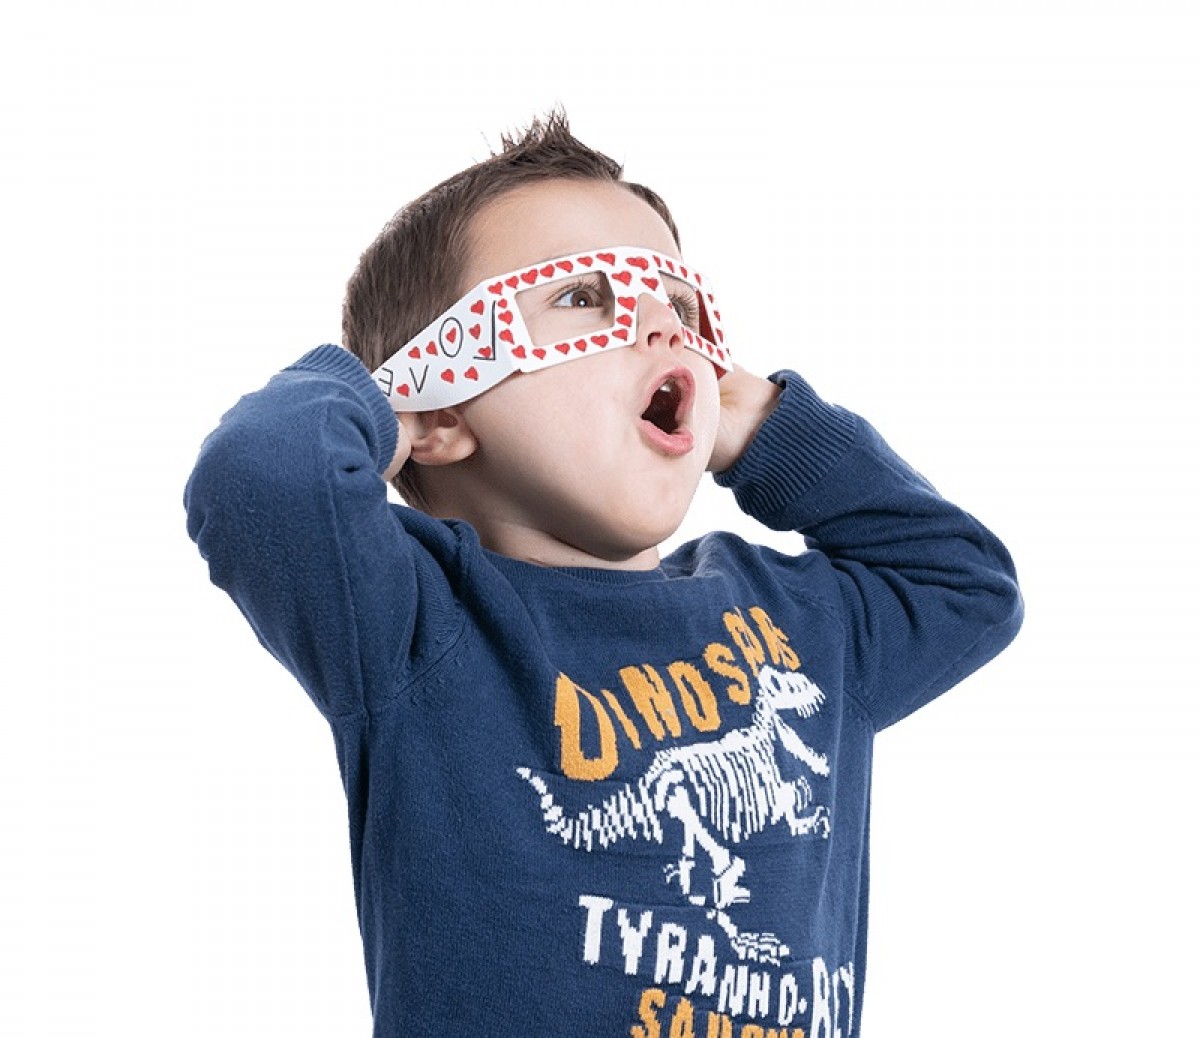 Les ulleres de realitat augmentada han estat dissenyades per infants ingressats a l'hospital.